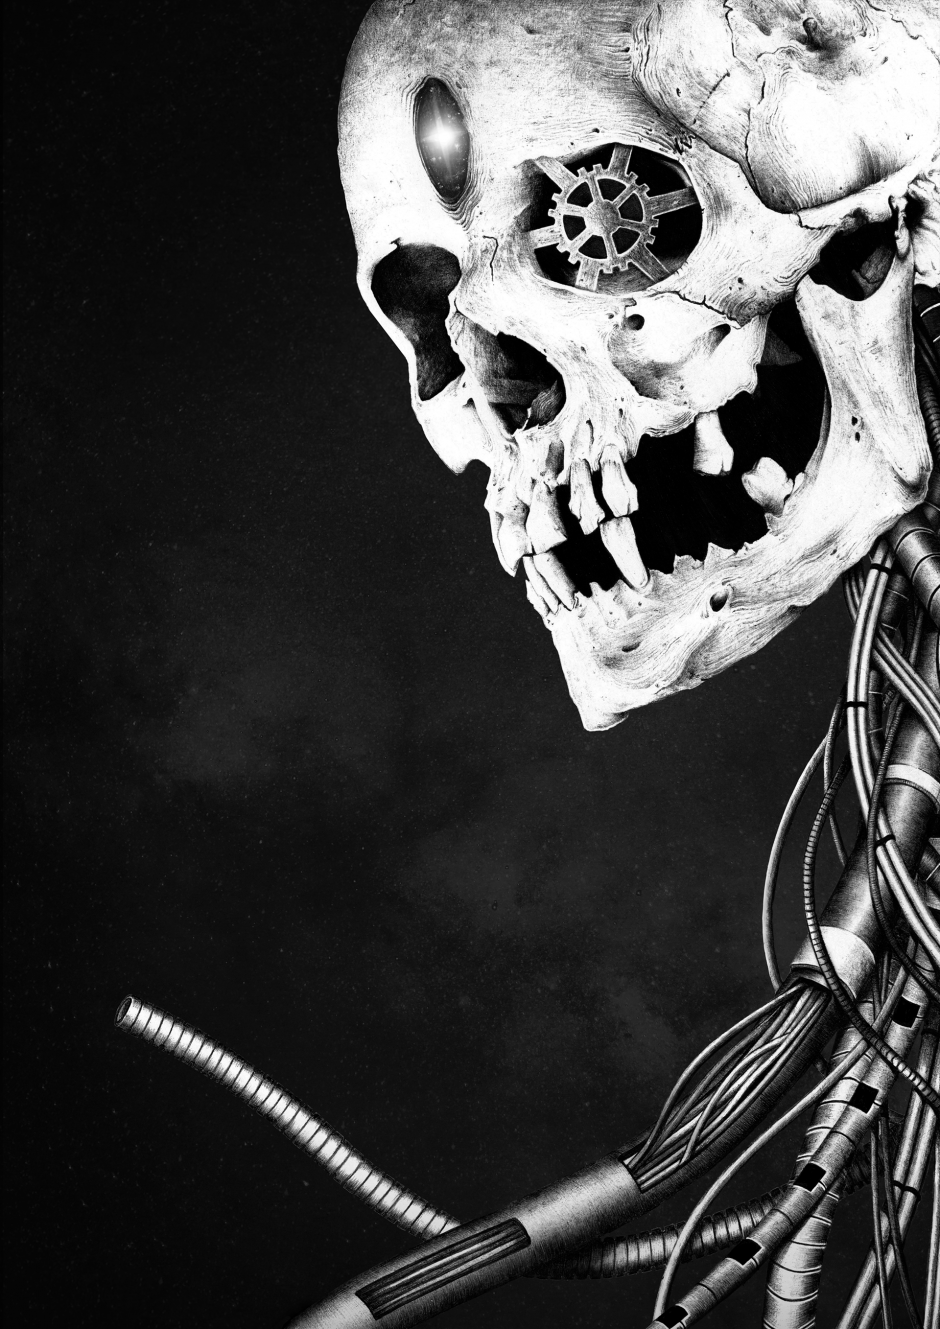 Manza April Darkart Ballpointpen Artist Illustration Nova Skull mecha bioorganic cables gear stars